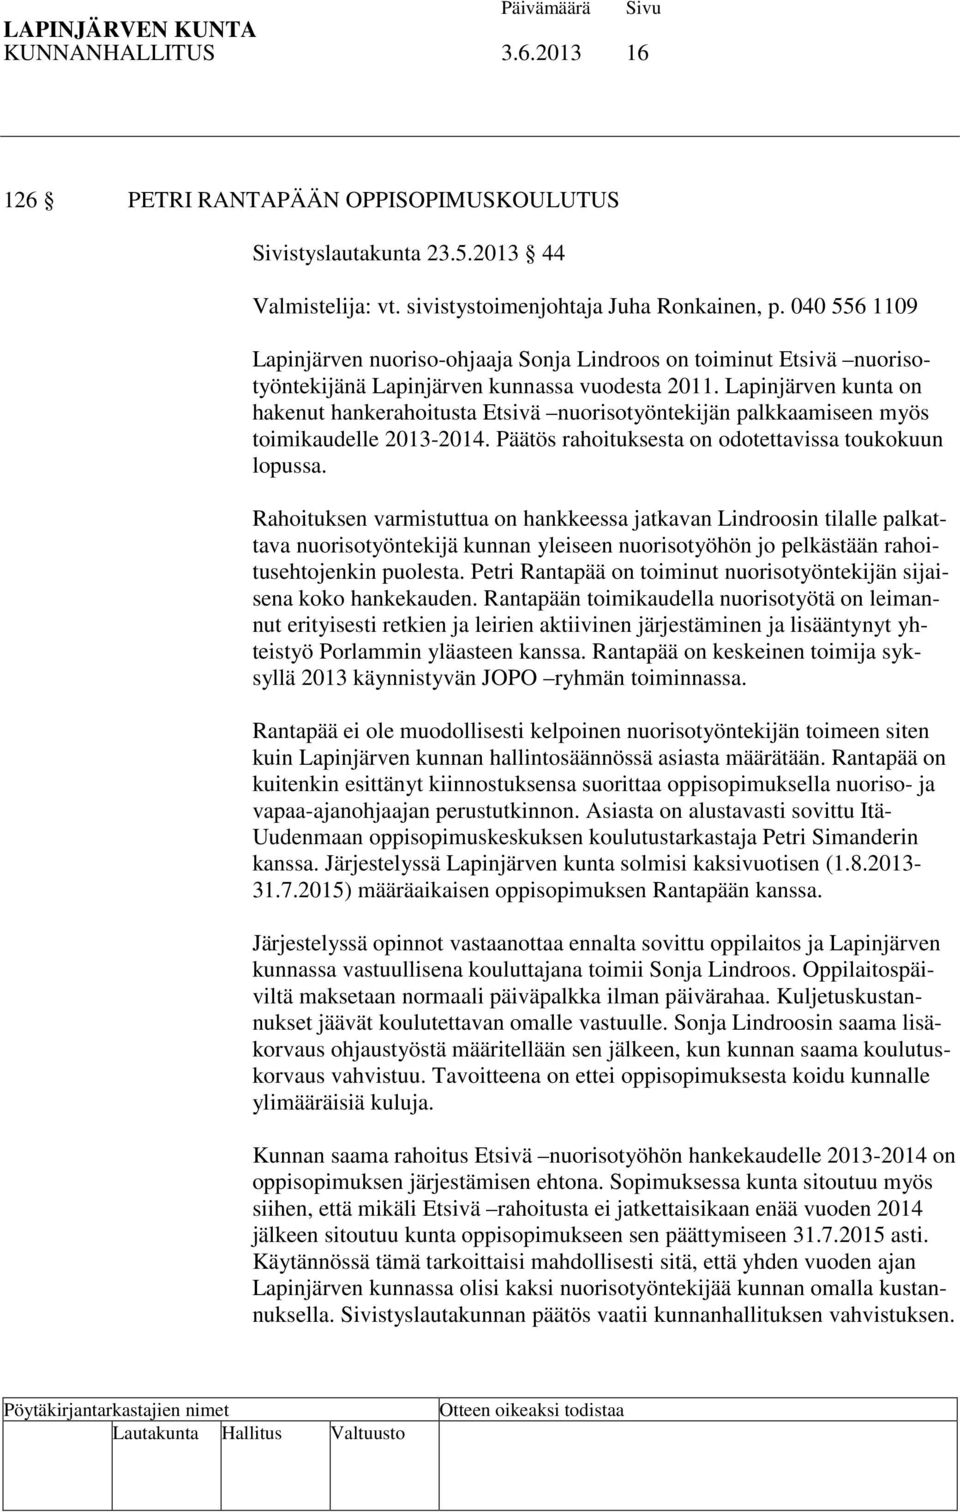 Lapinjärven kunta on hakenut hankerahoitusta Etsivä nuorisotyöntekijän palkkaamiseen myös toimikaudelle 2013-2014. Päätös rahoituksesta on odotettavissa toukokuun lopussa.